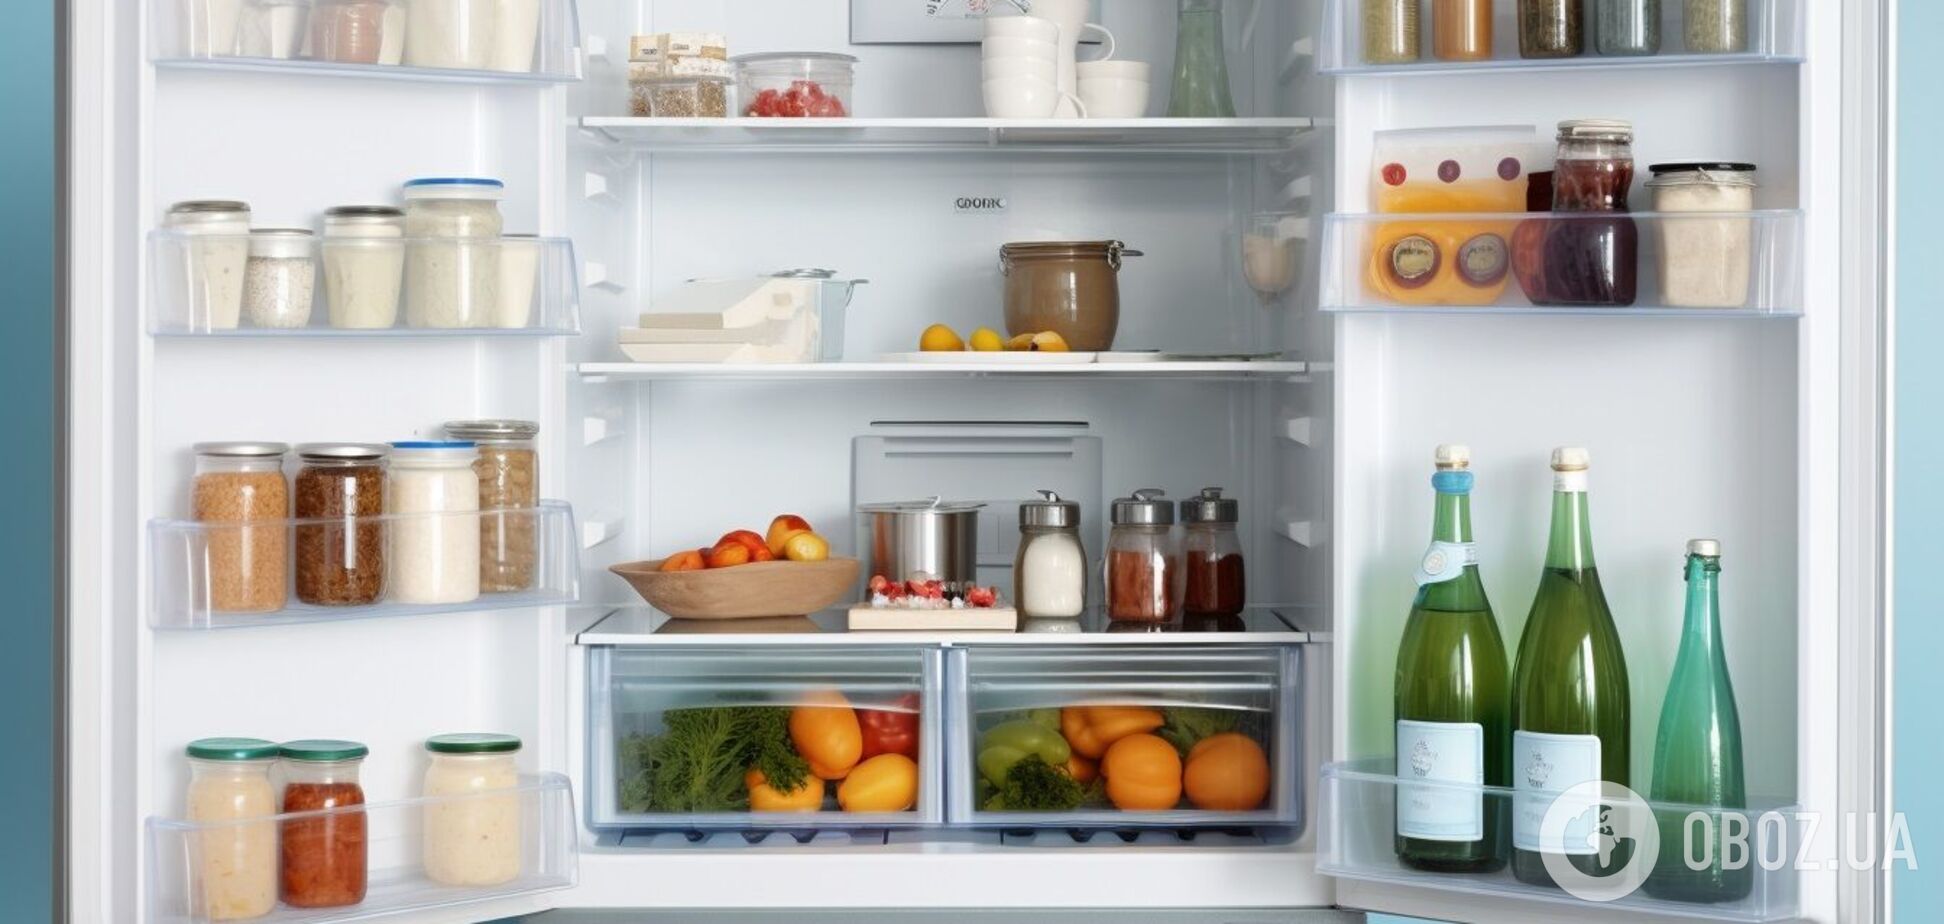 Їжа більше не псуватиметься: 5 правил для підтримки холодильника у чистоті